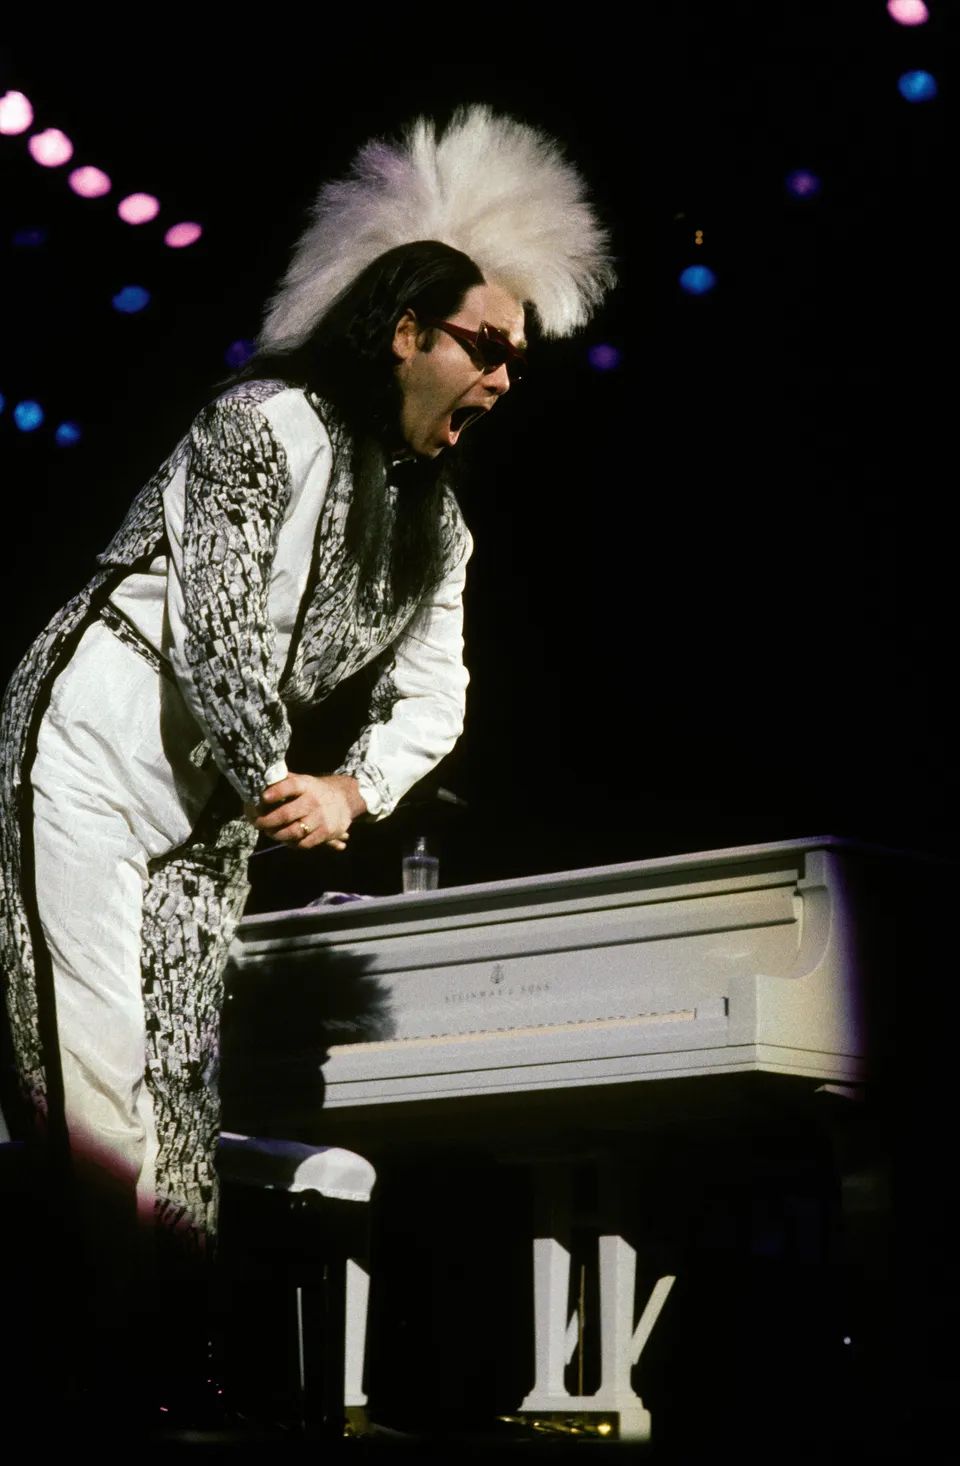 John performing in concert, 1984